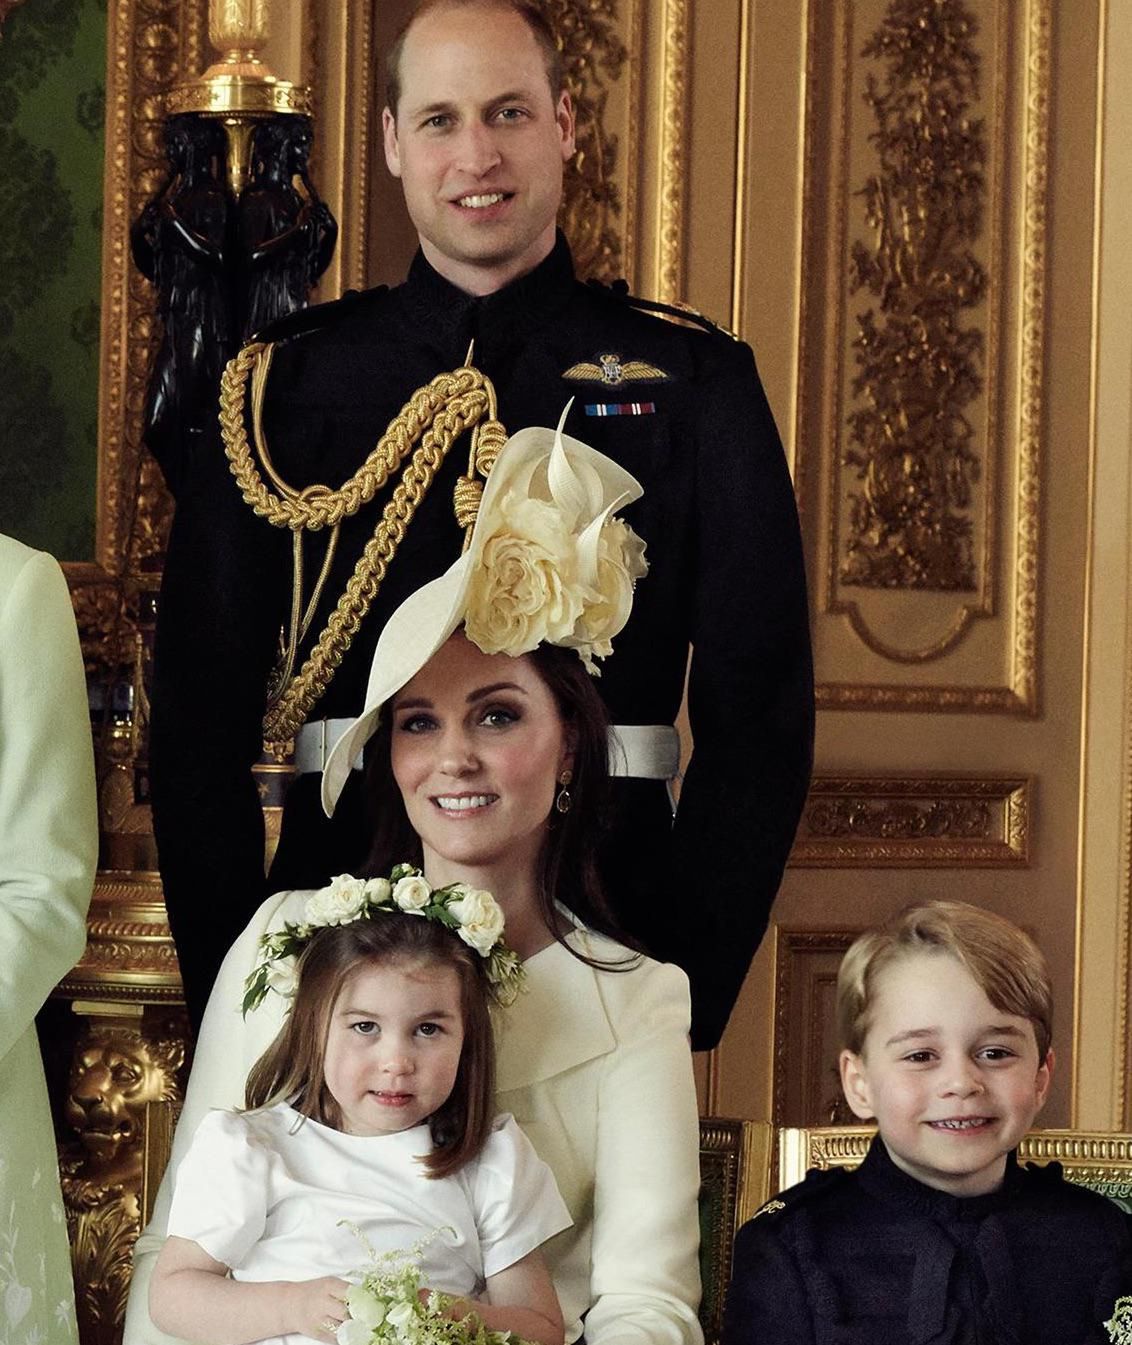 Książę William i księżna Kate z dziećmi – Charlotte i George'em – na oficjalnym ślubnym portrecie Meghan Markle i księcia Harry'ego